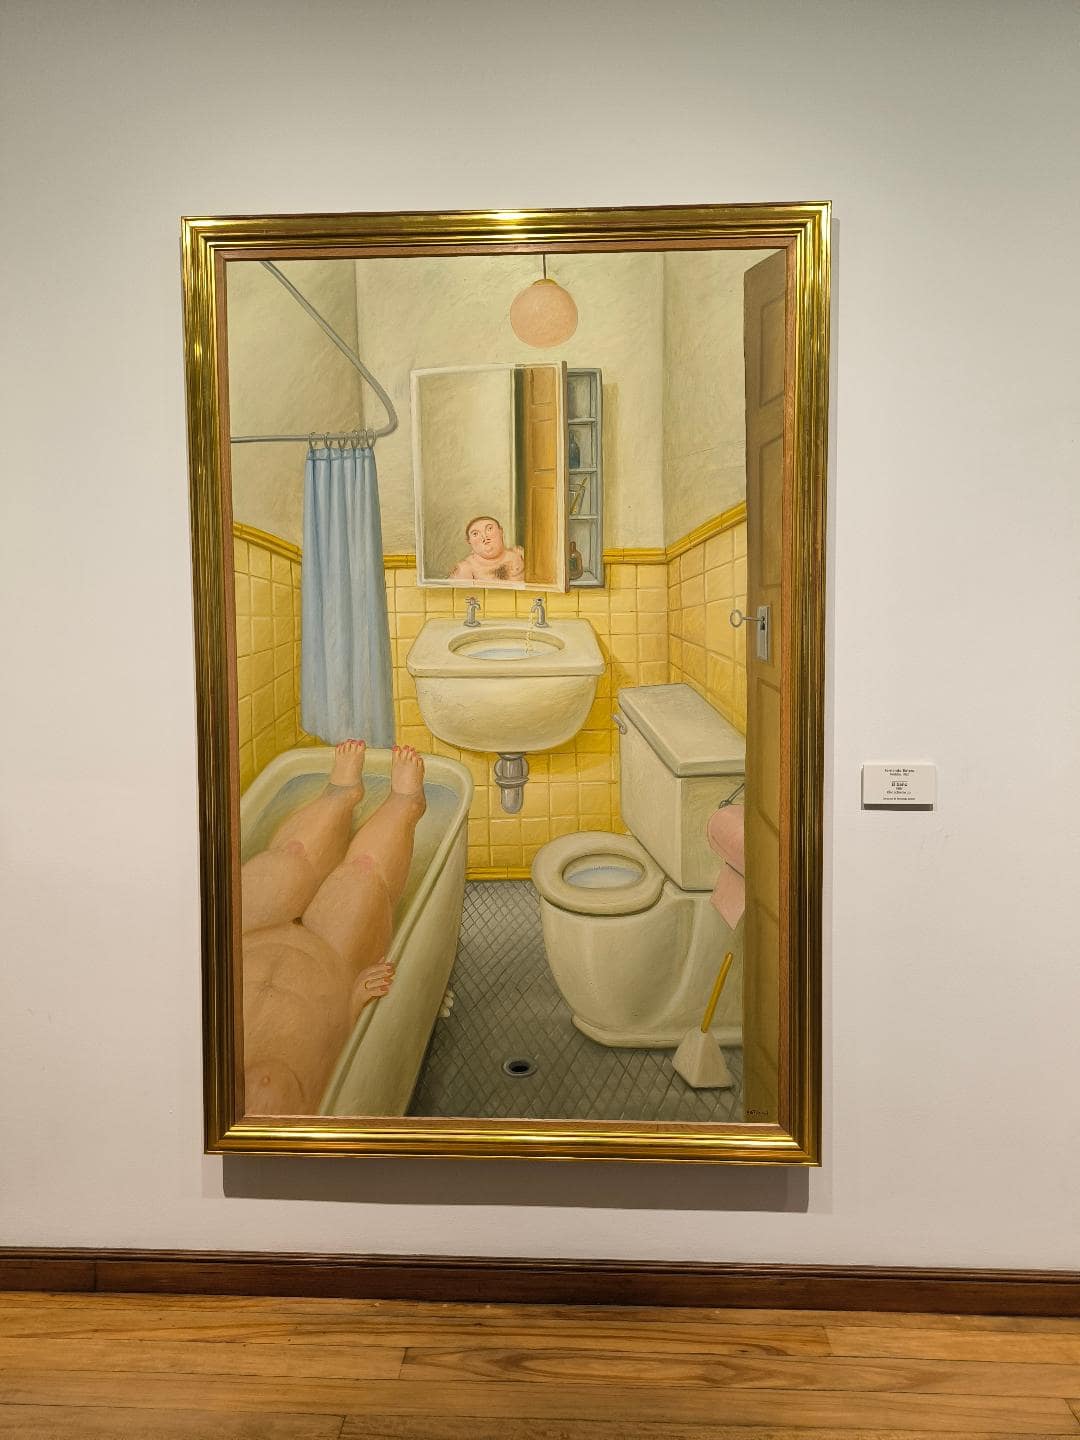 Obraz, na ktorom je muž so ženou v kúpeľni. Žena sa kúpe a muž sa obzerá v zrkadle.